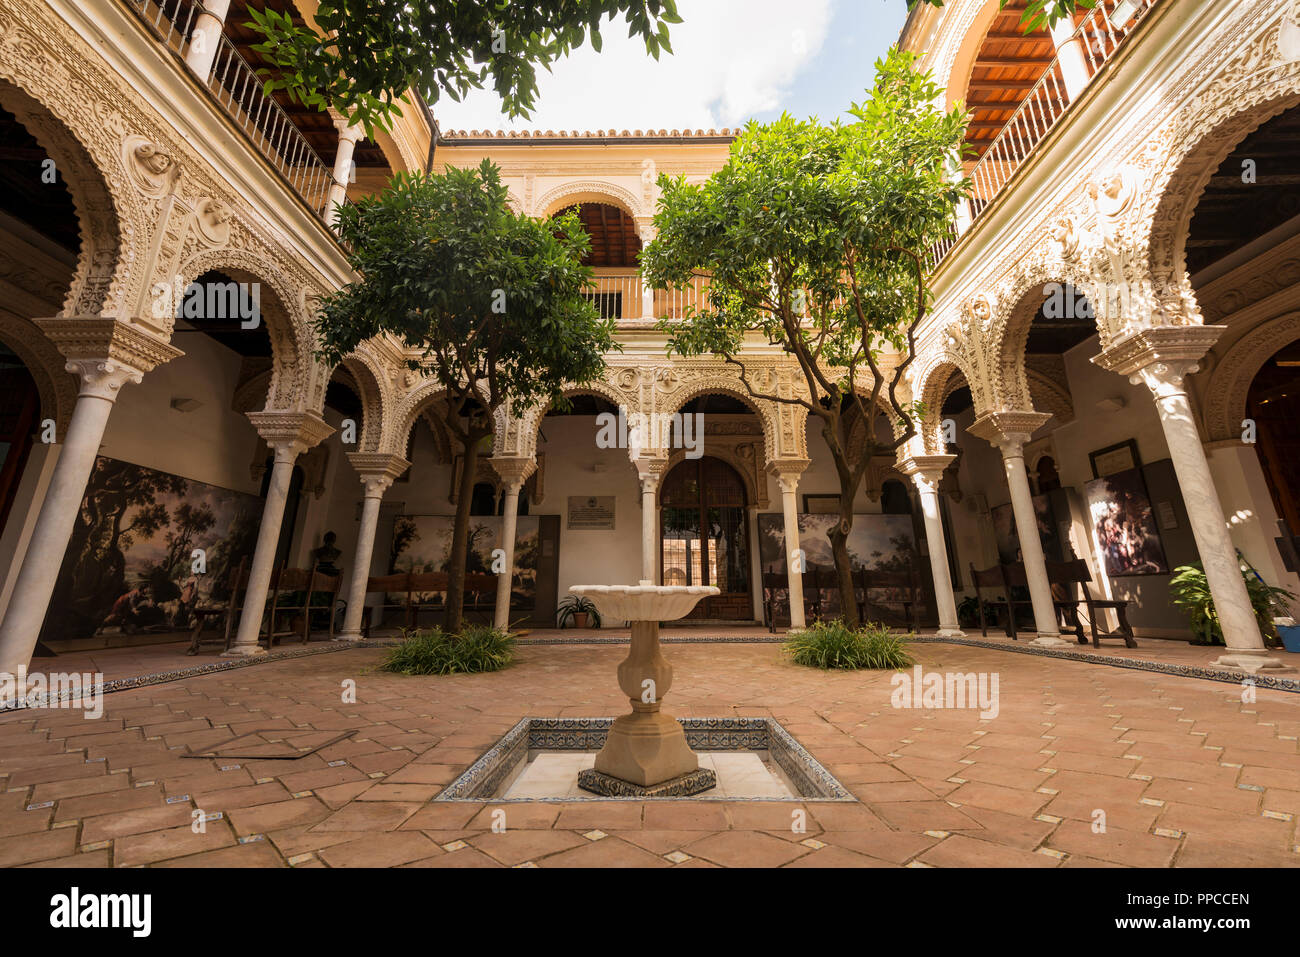 Innenhof mit Säulengang, Arabische Architektur, Casa de los Pinelo, Andalusien, Spanien Stockfoto